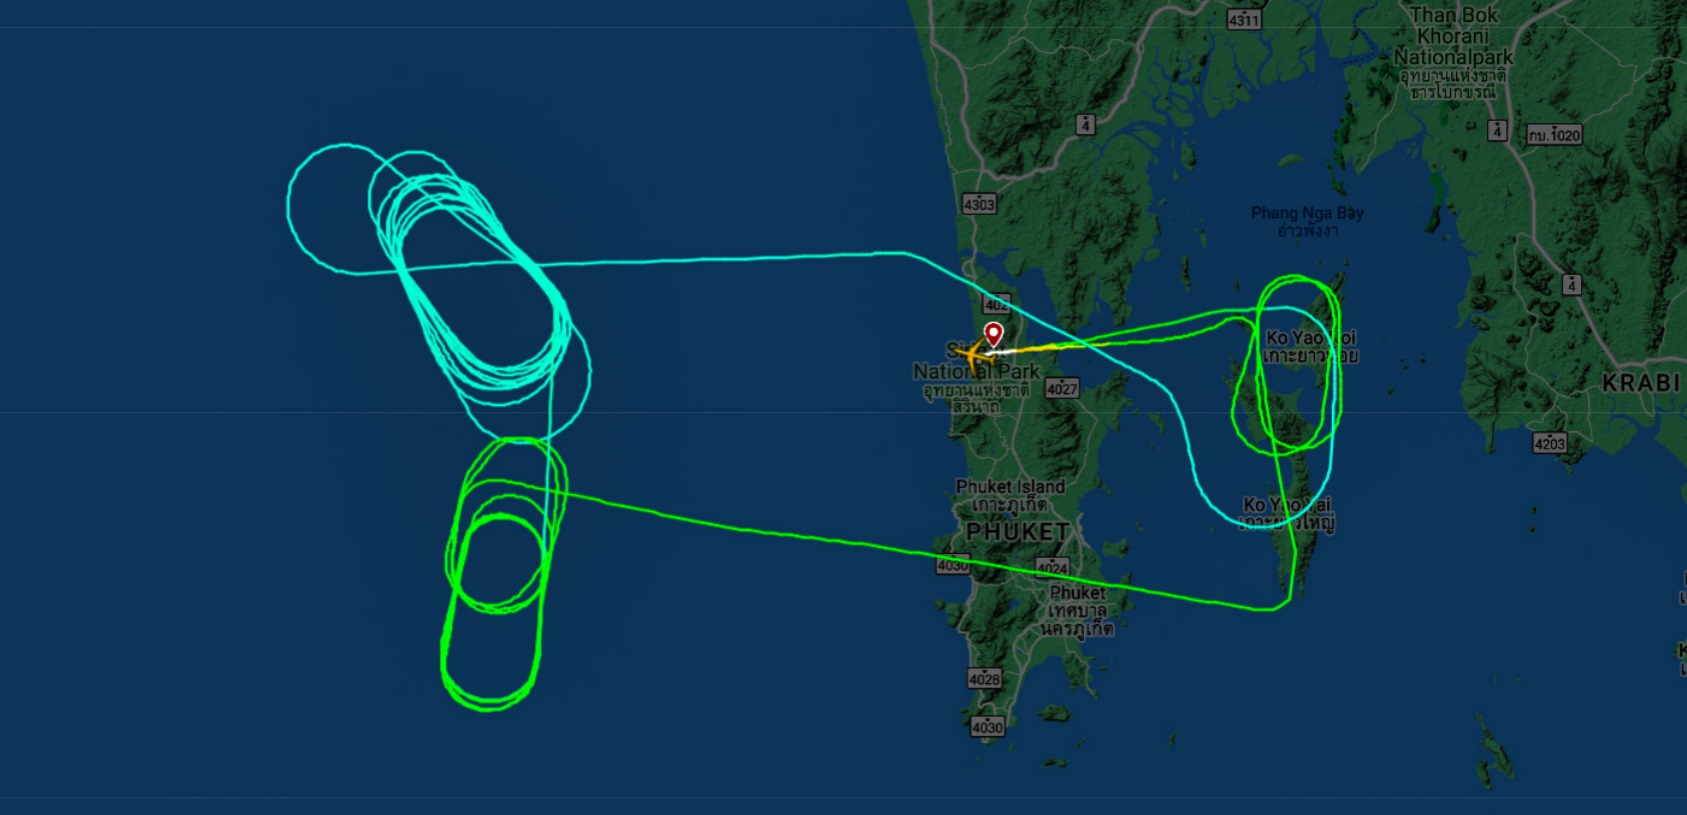 Авария или шутка? Самолёт с россиянами 2 часа рисовал загадочные круги в воздухе